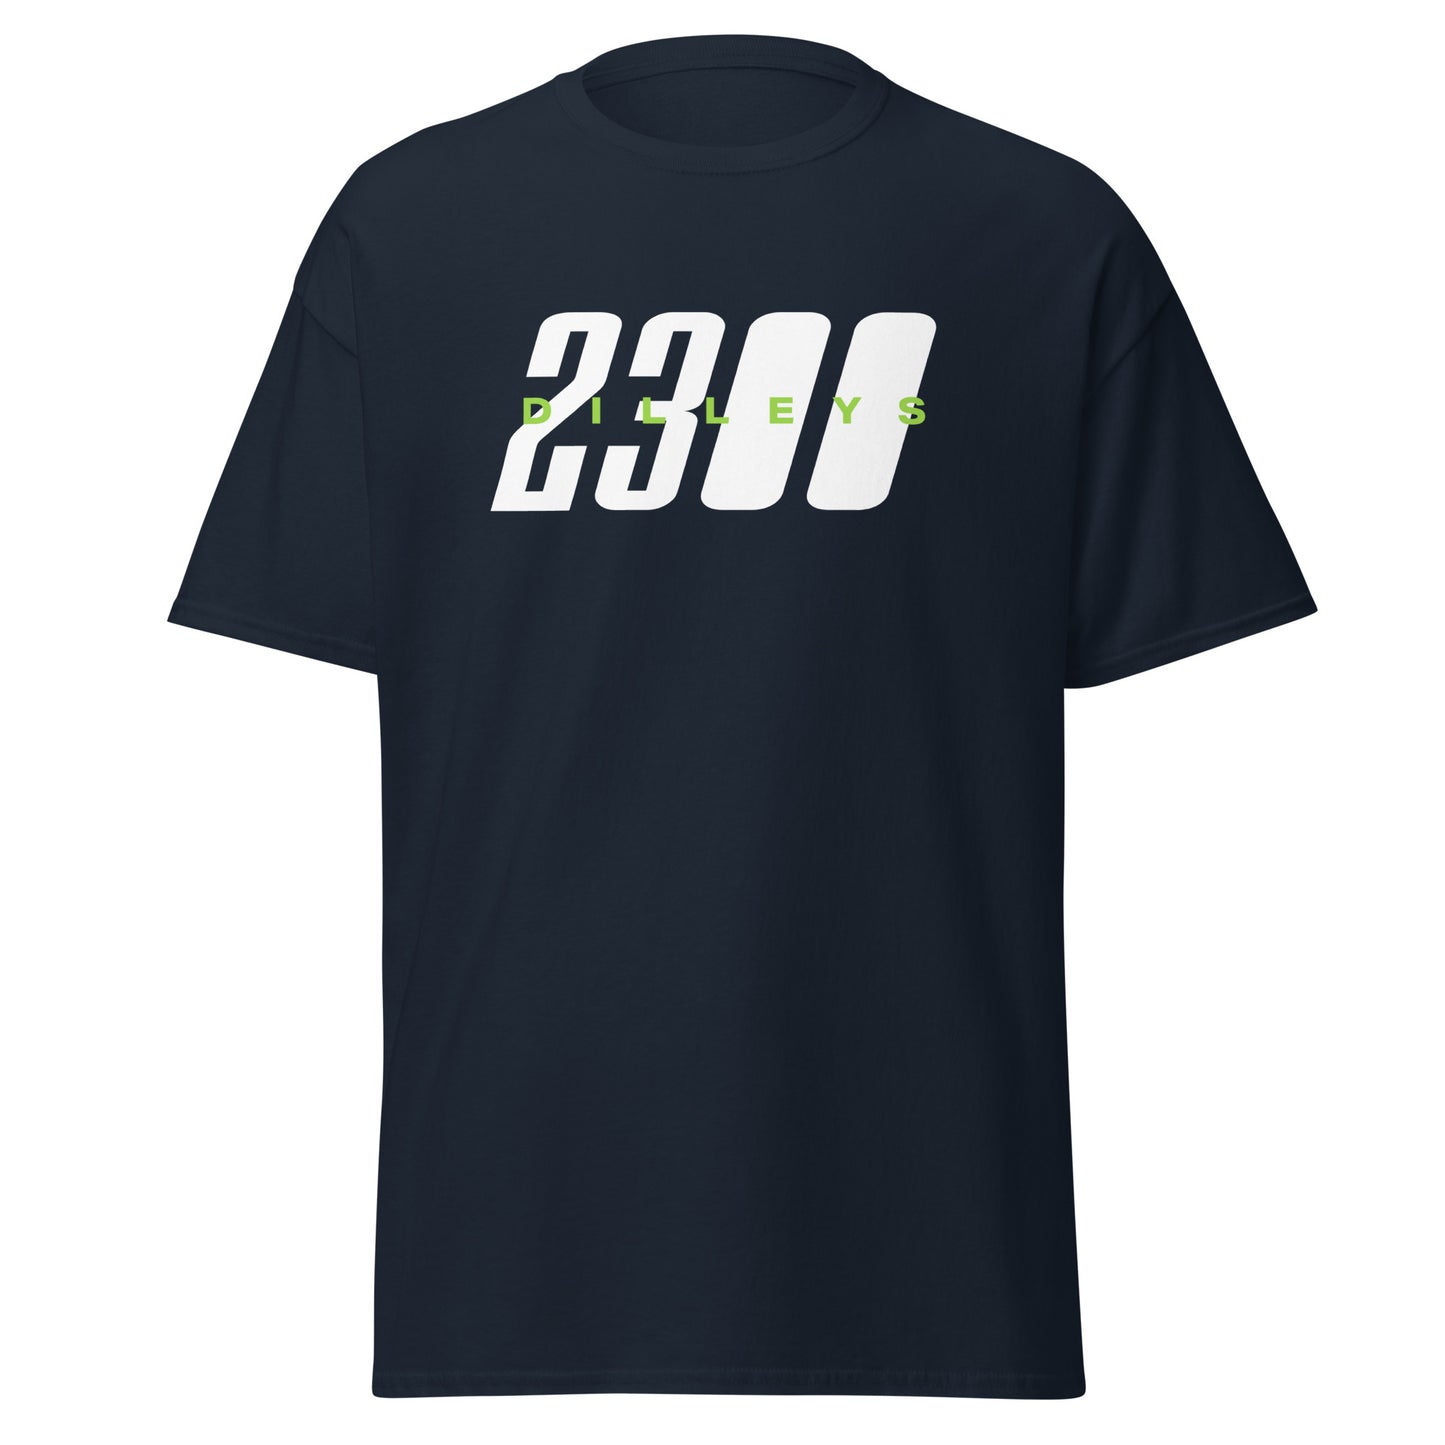 2300 Dilleys T-Shirt